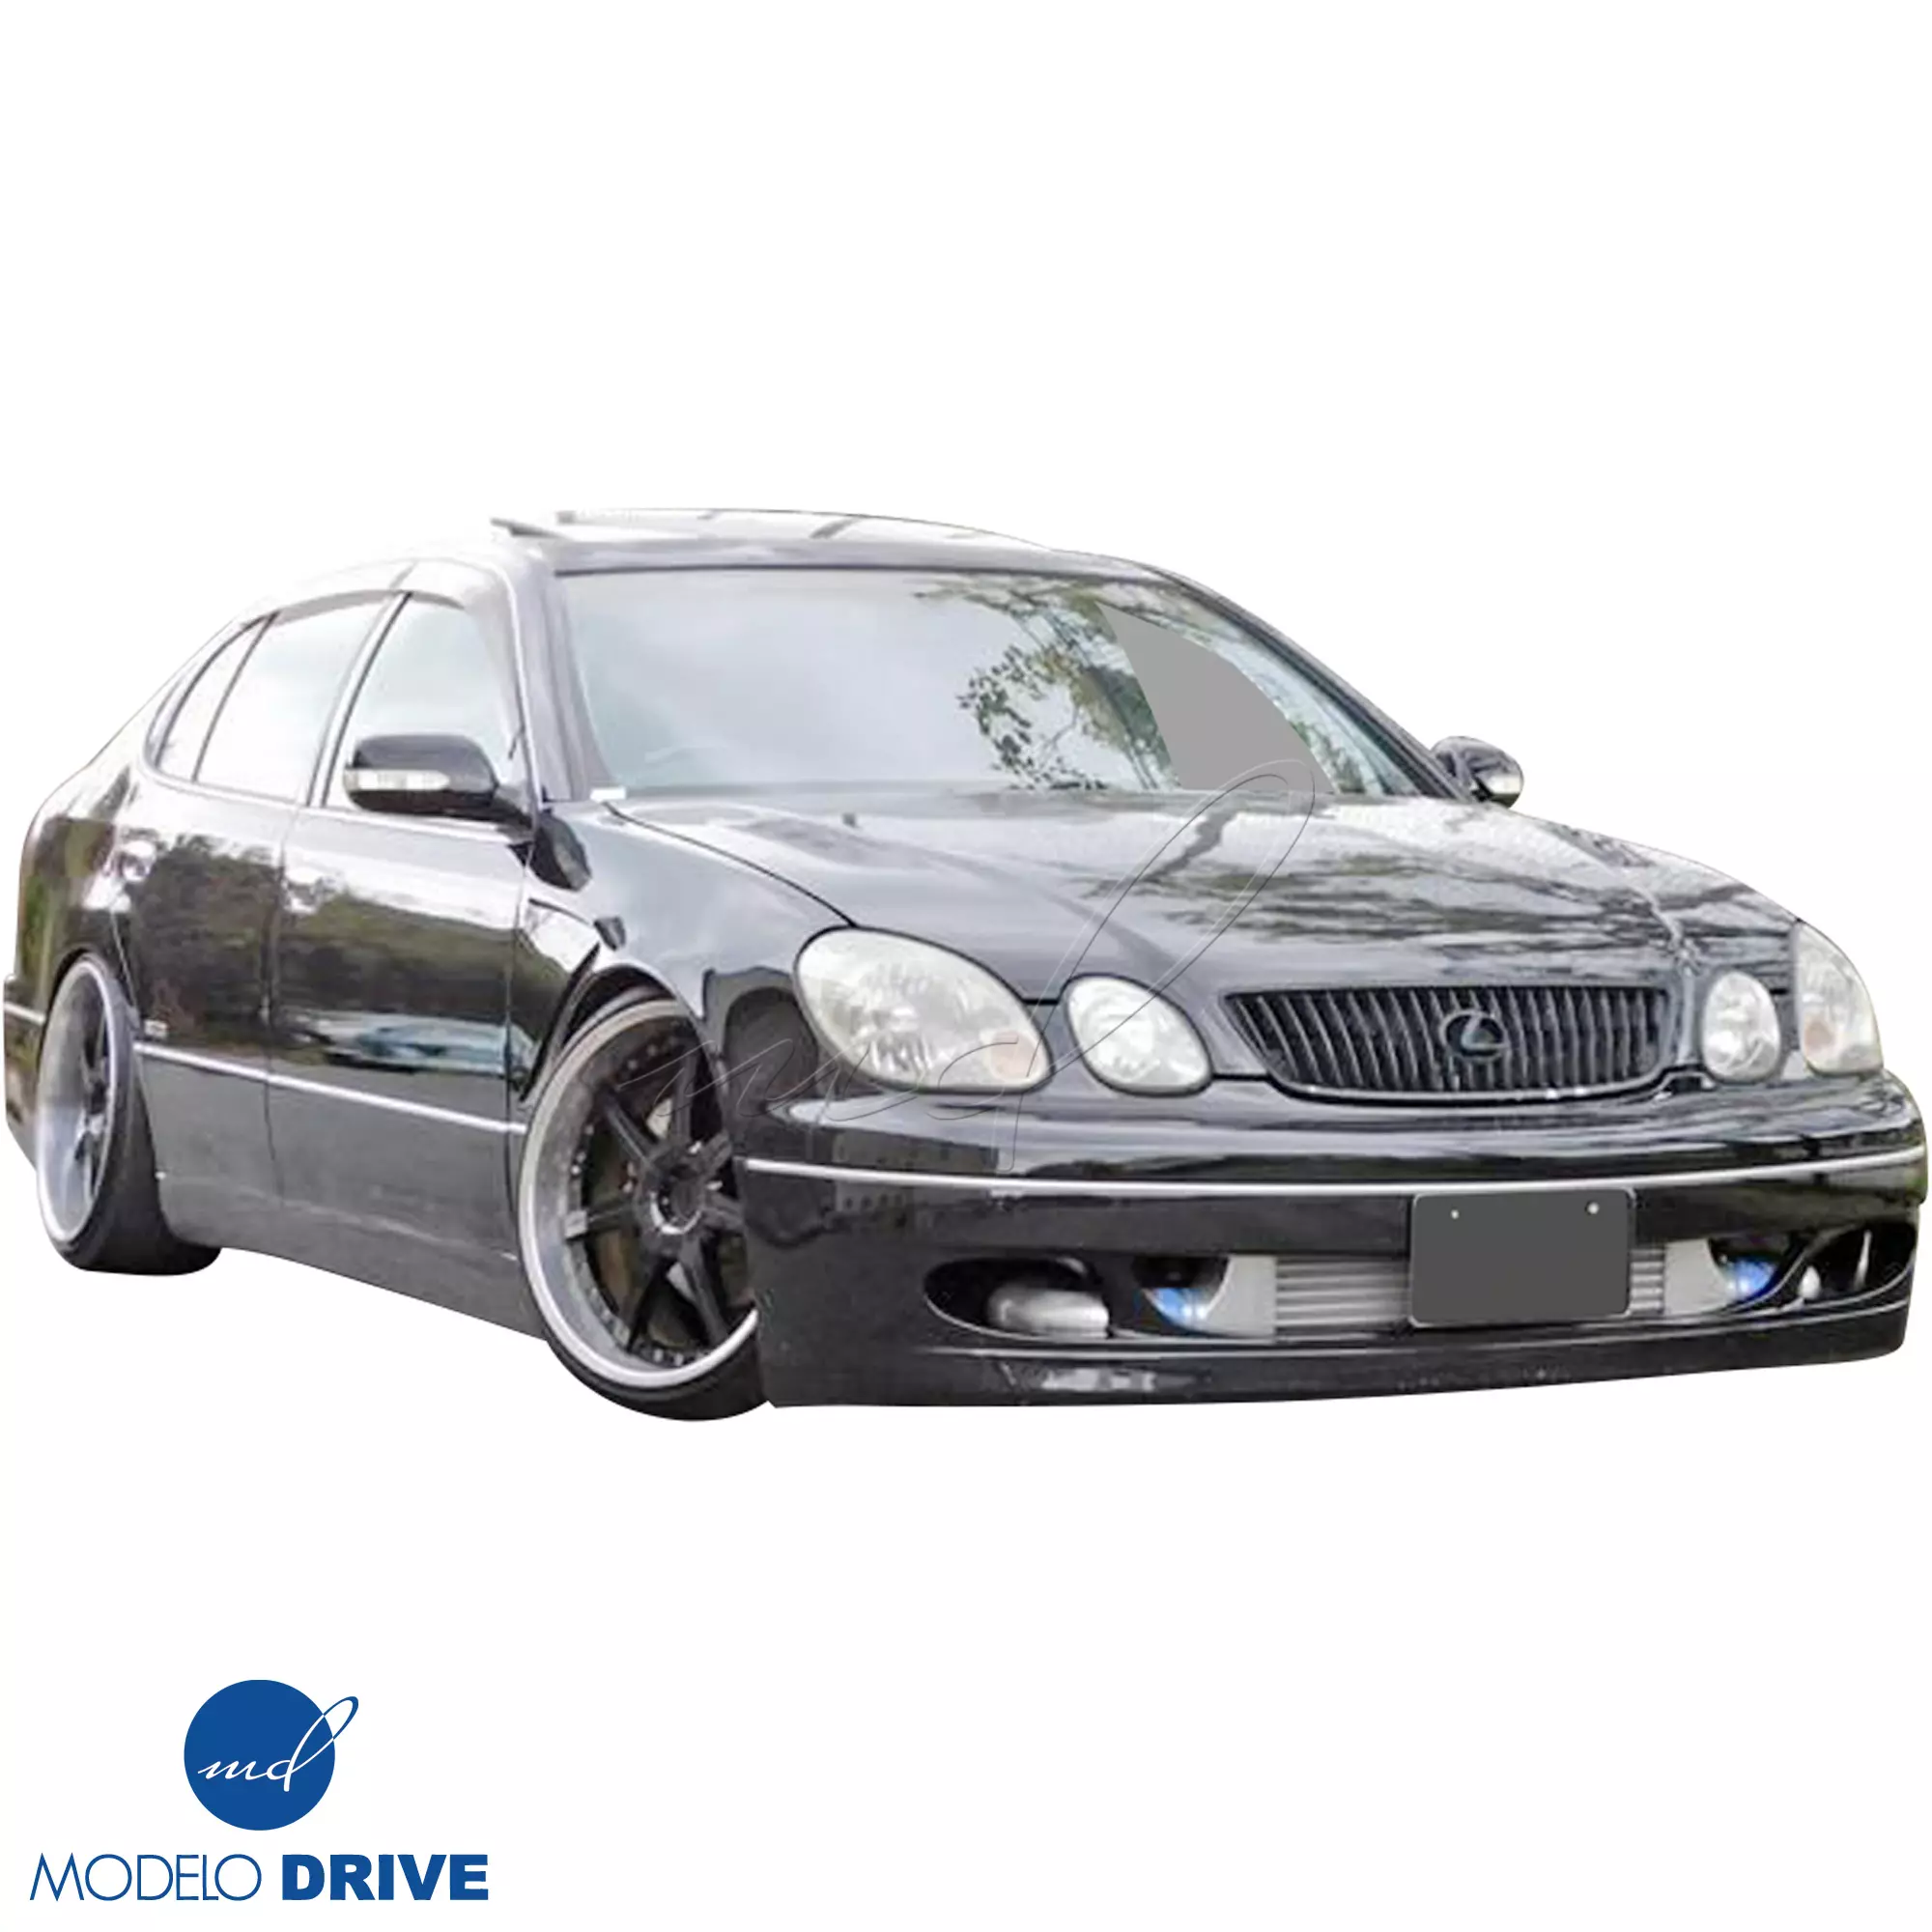 ModeloDrive FRP JUNT Front Bumper > Lexus GS Series GS400 GS300 1998-2005 - Image 23